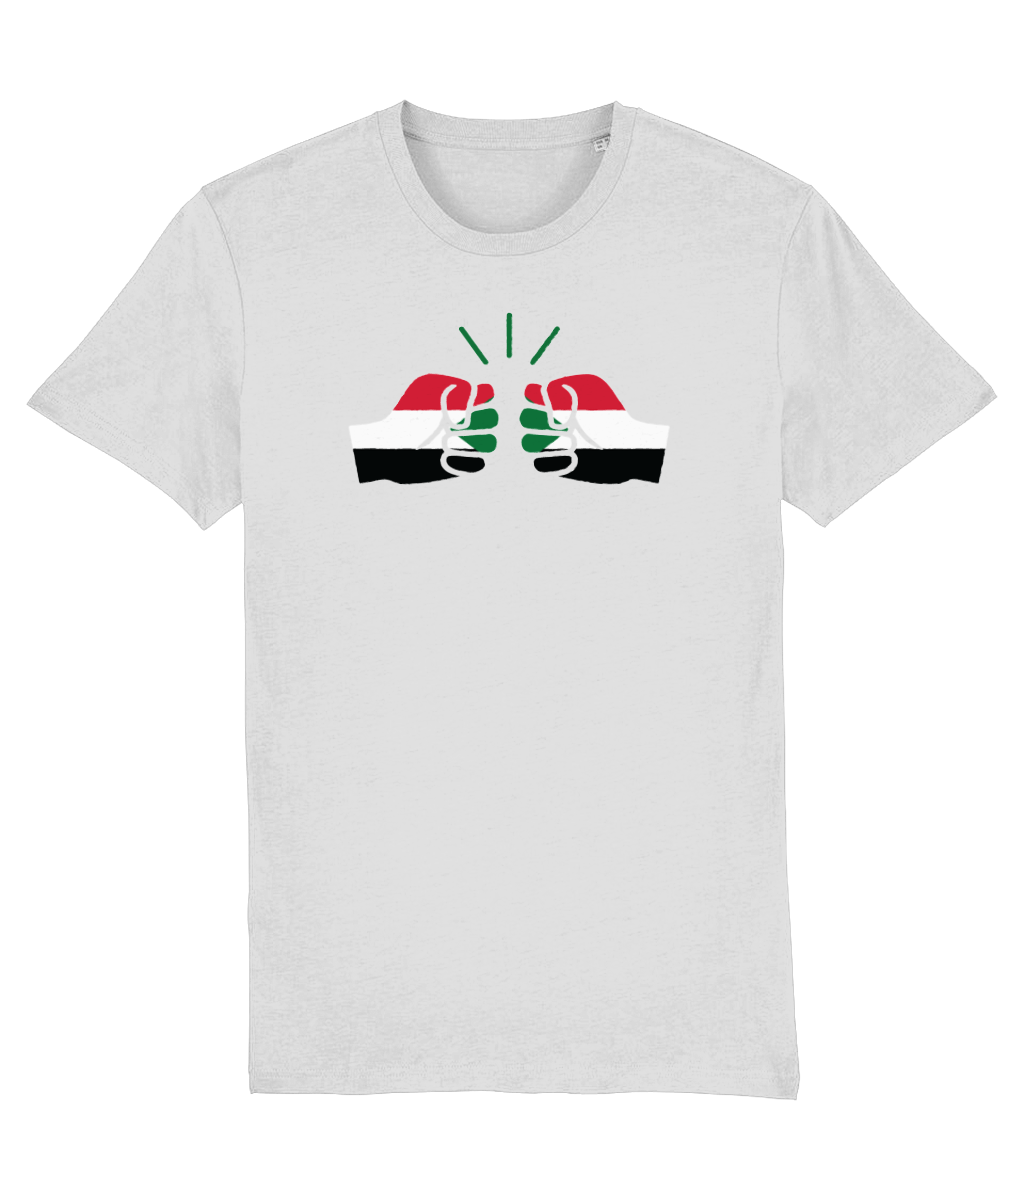 We Run Tings, Sudan, Organic Ring Spun Cotton T-Shirt